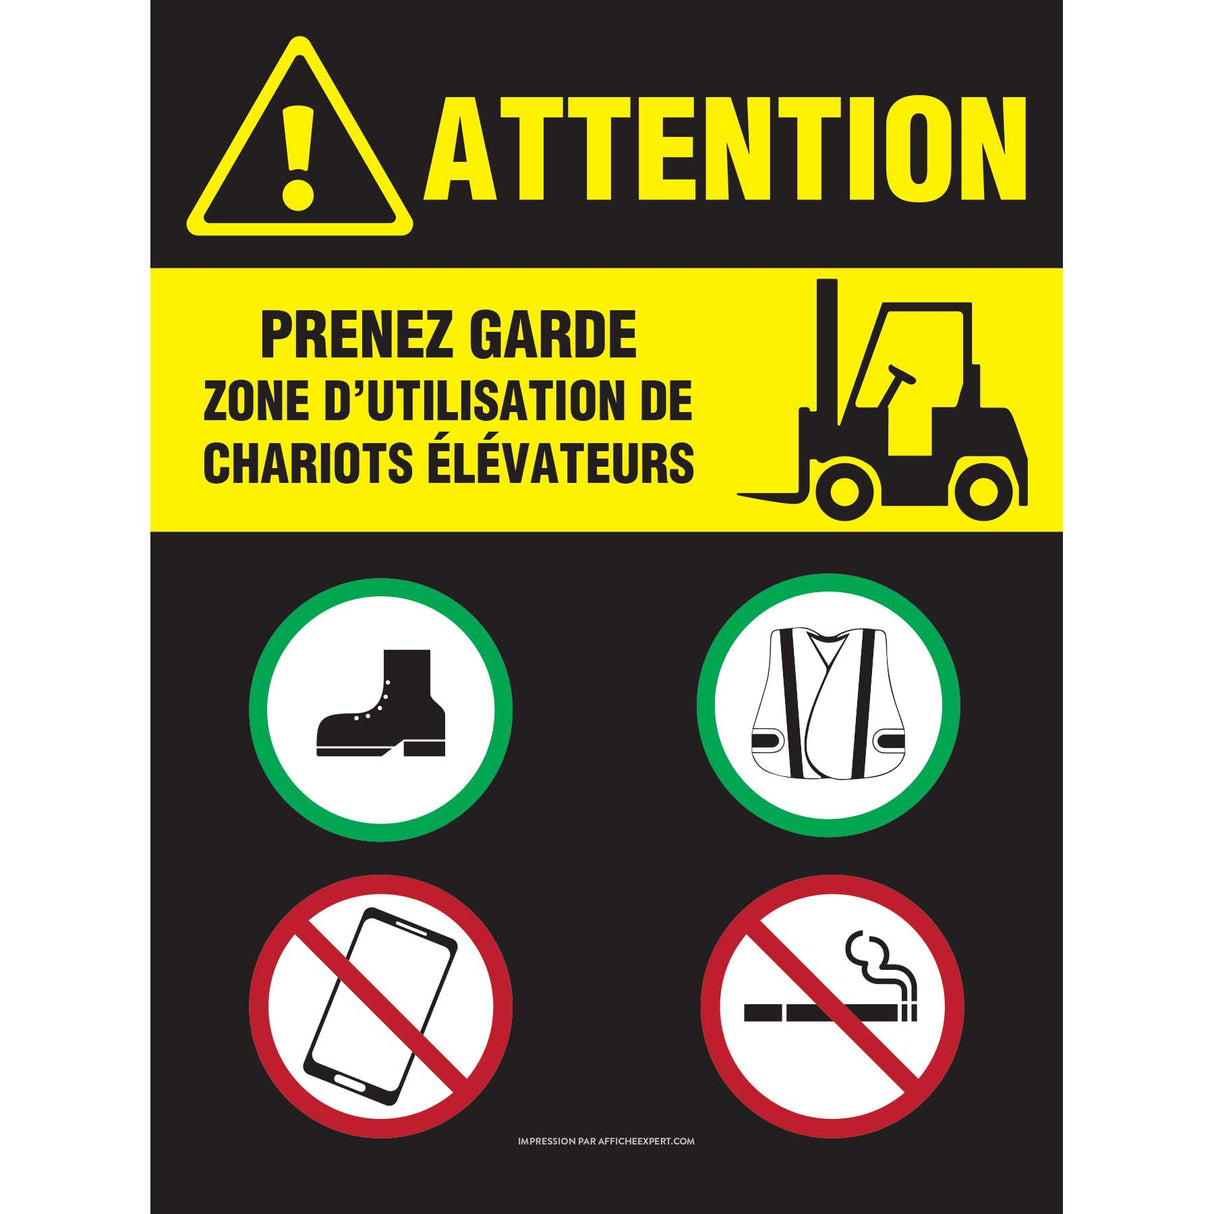 Attention - Zone d'utilisation de chariots élévateurs